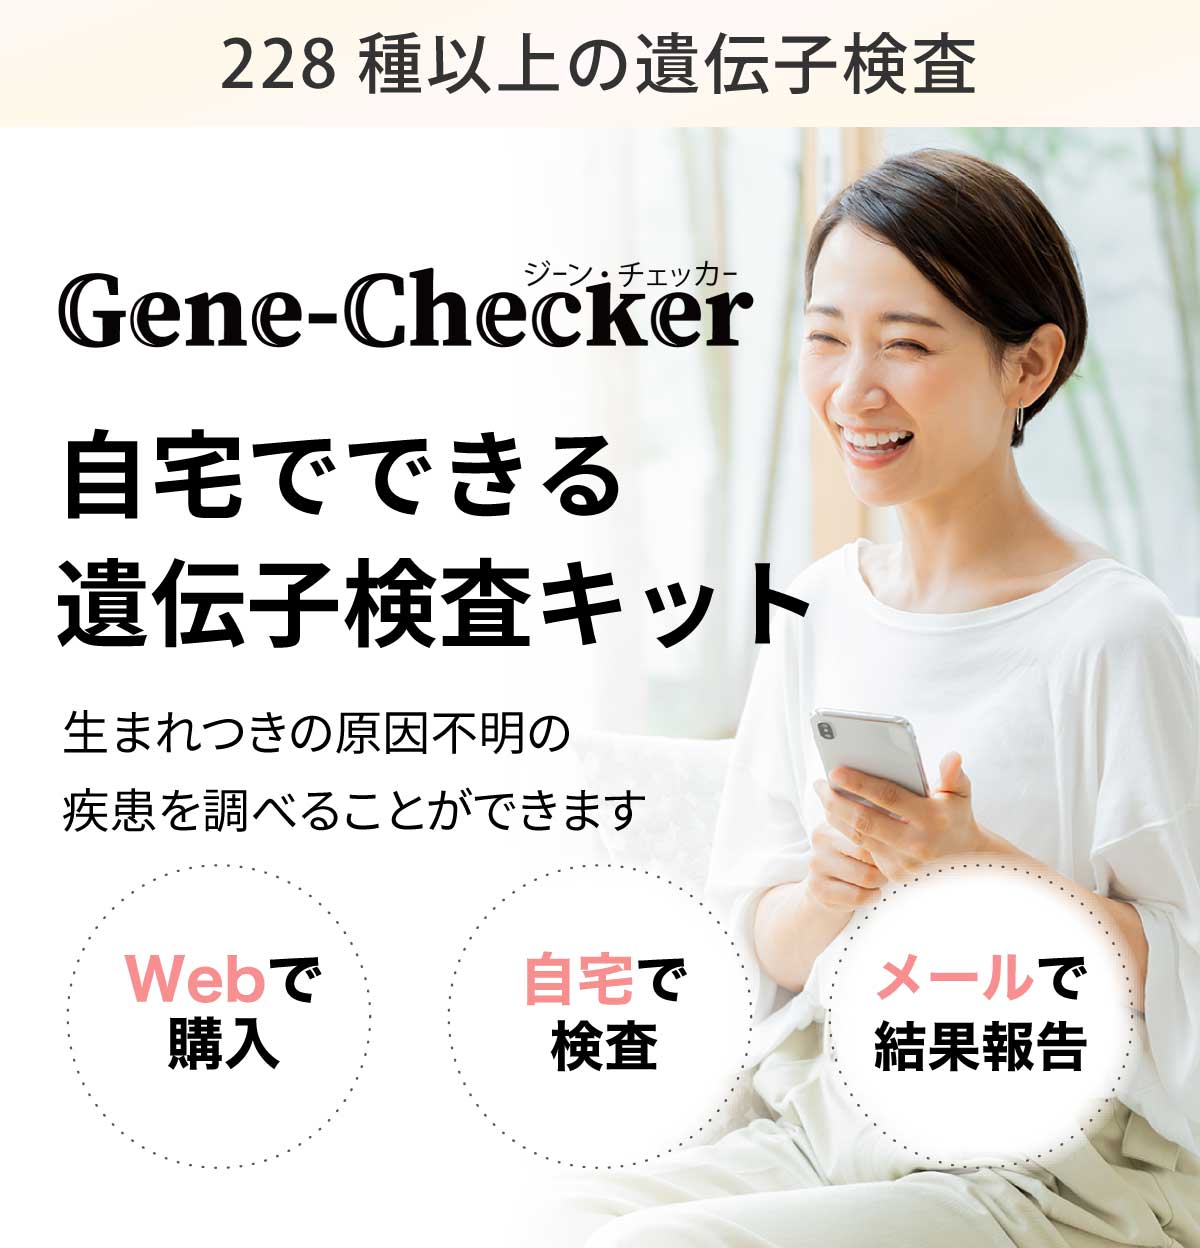 遺伝子検査┃ジェーンチェッカー(gene-checker)【劣勢遺伝子検査】カップルや新生児におすすめ